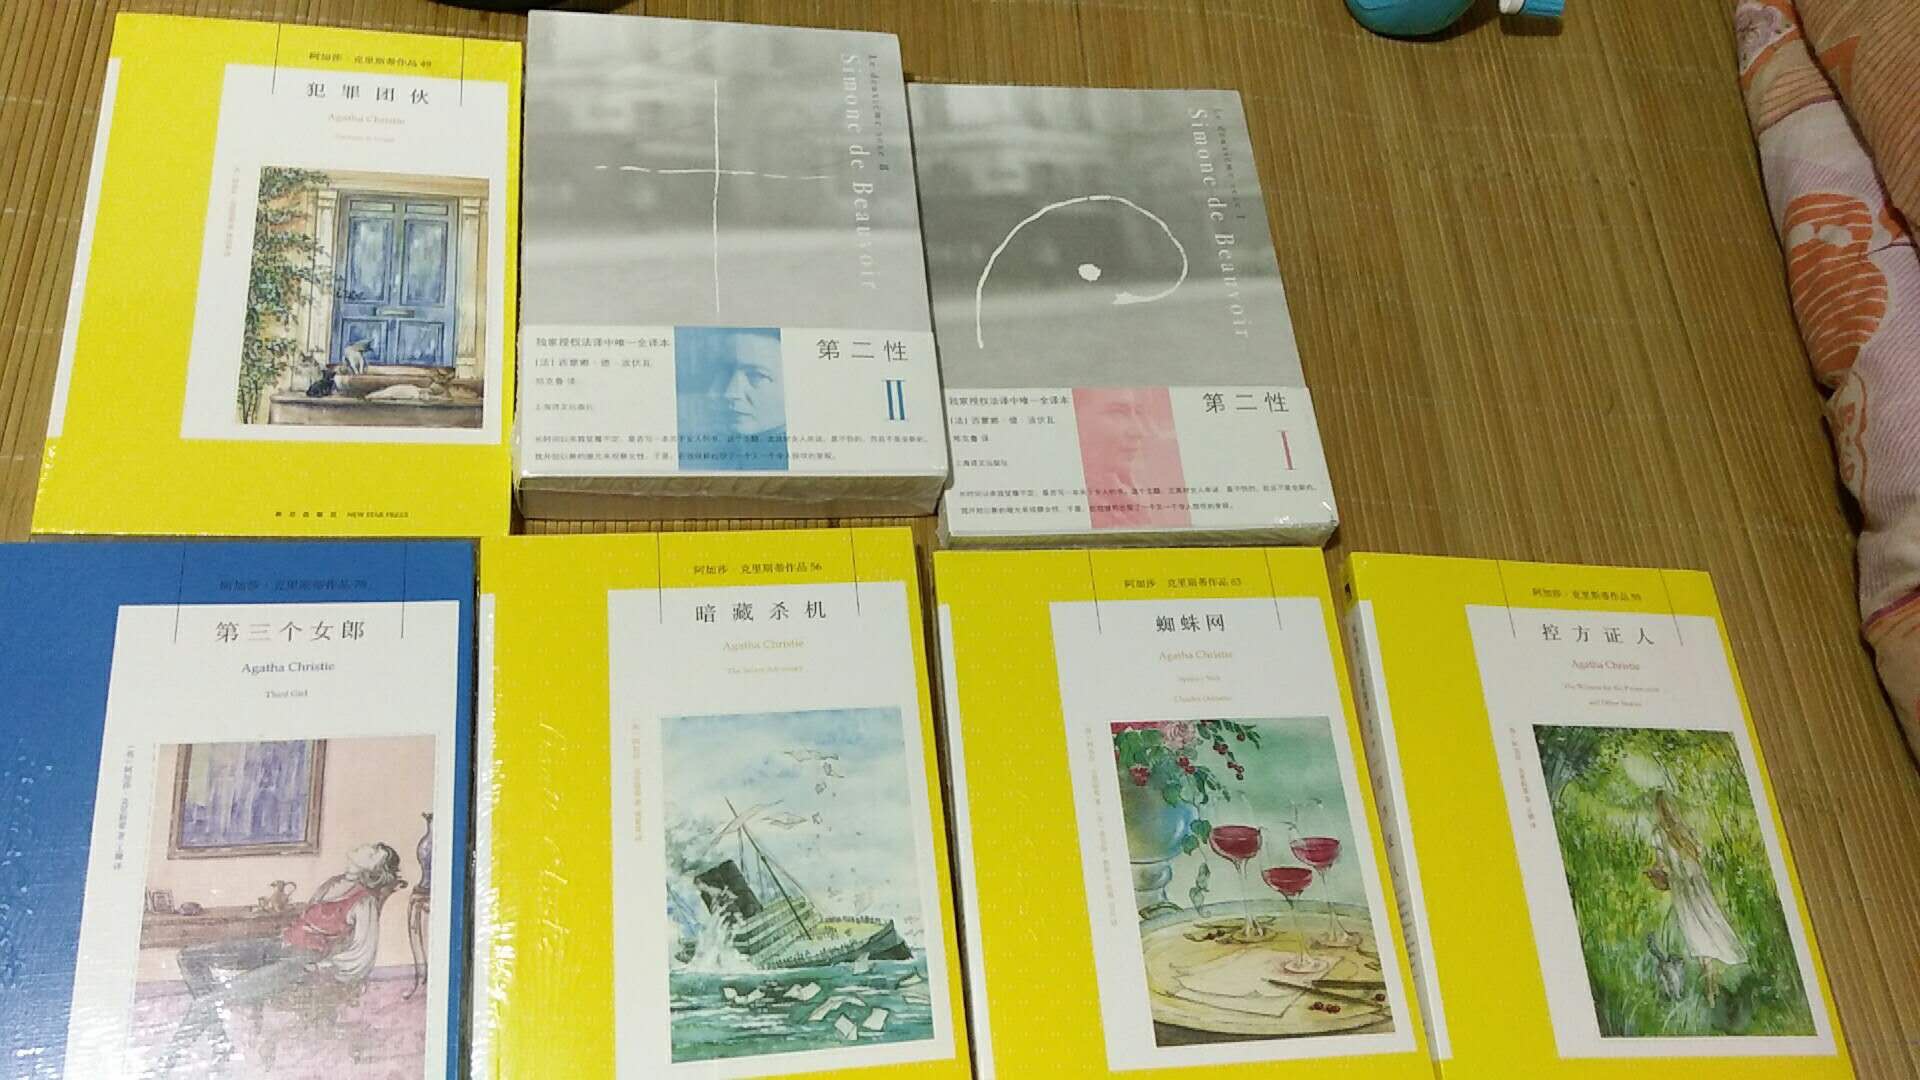 读书节江浙地区书没得太快了?，好几本蓝皮的阿加莎的书没买到。